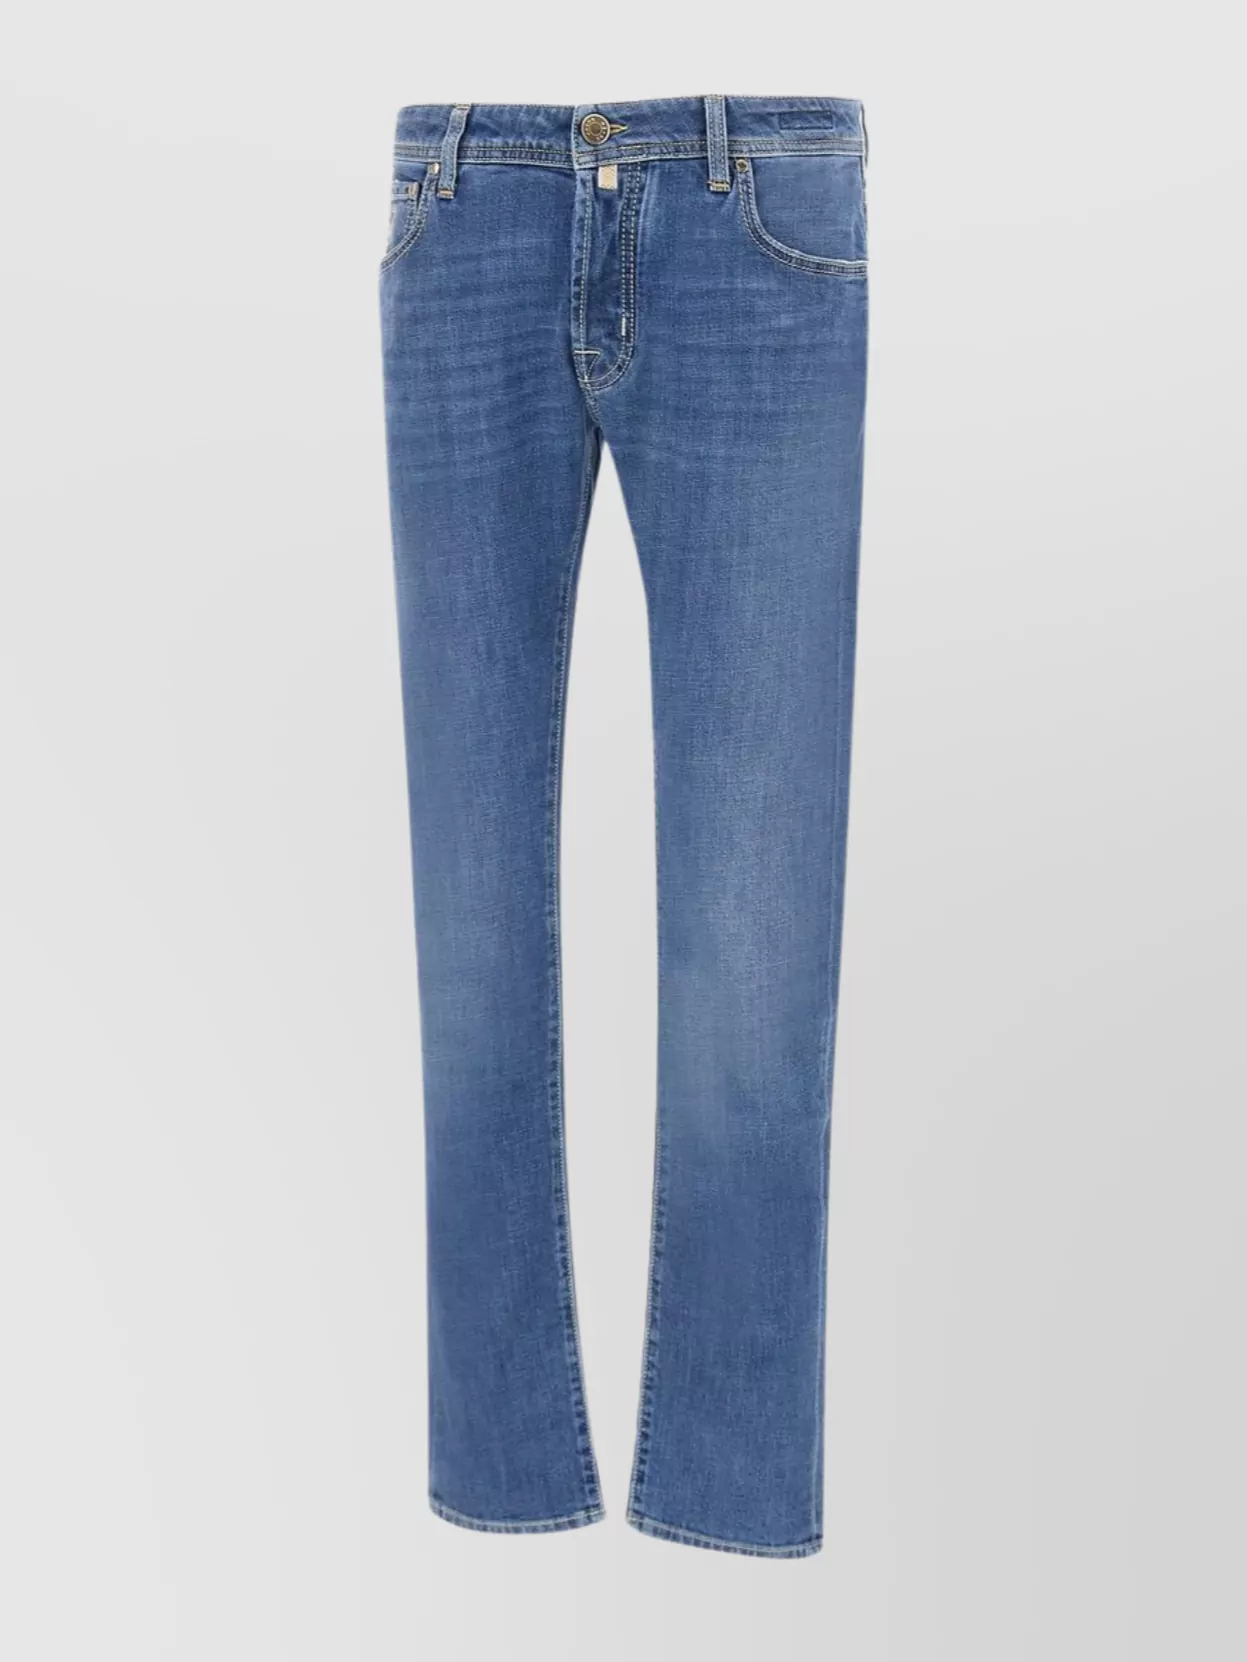 Shop Jacob Cohen Scented Super Slim Fit Men's Jeans